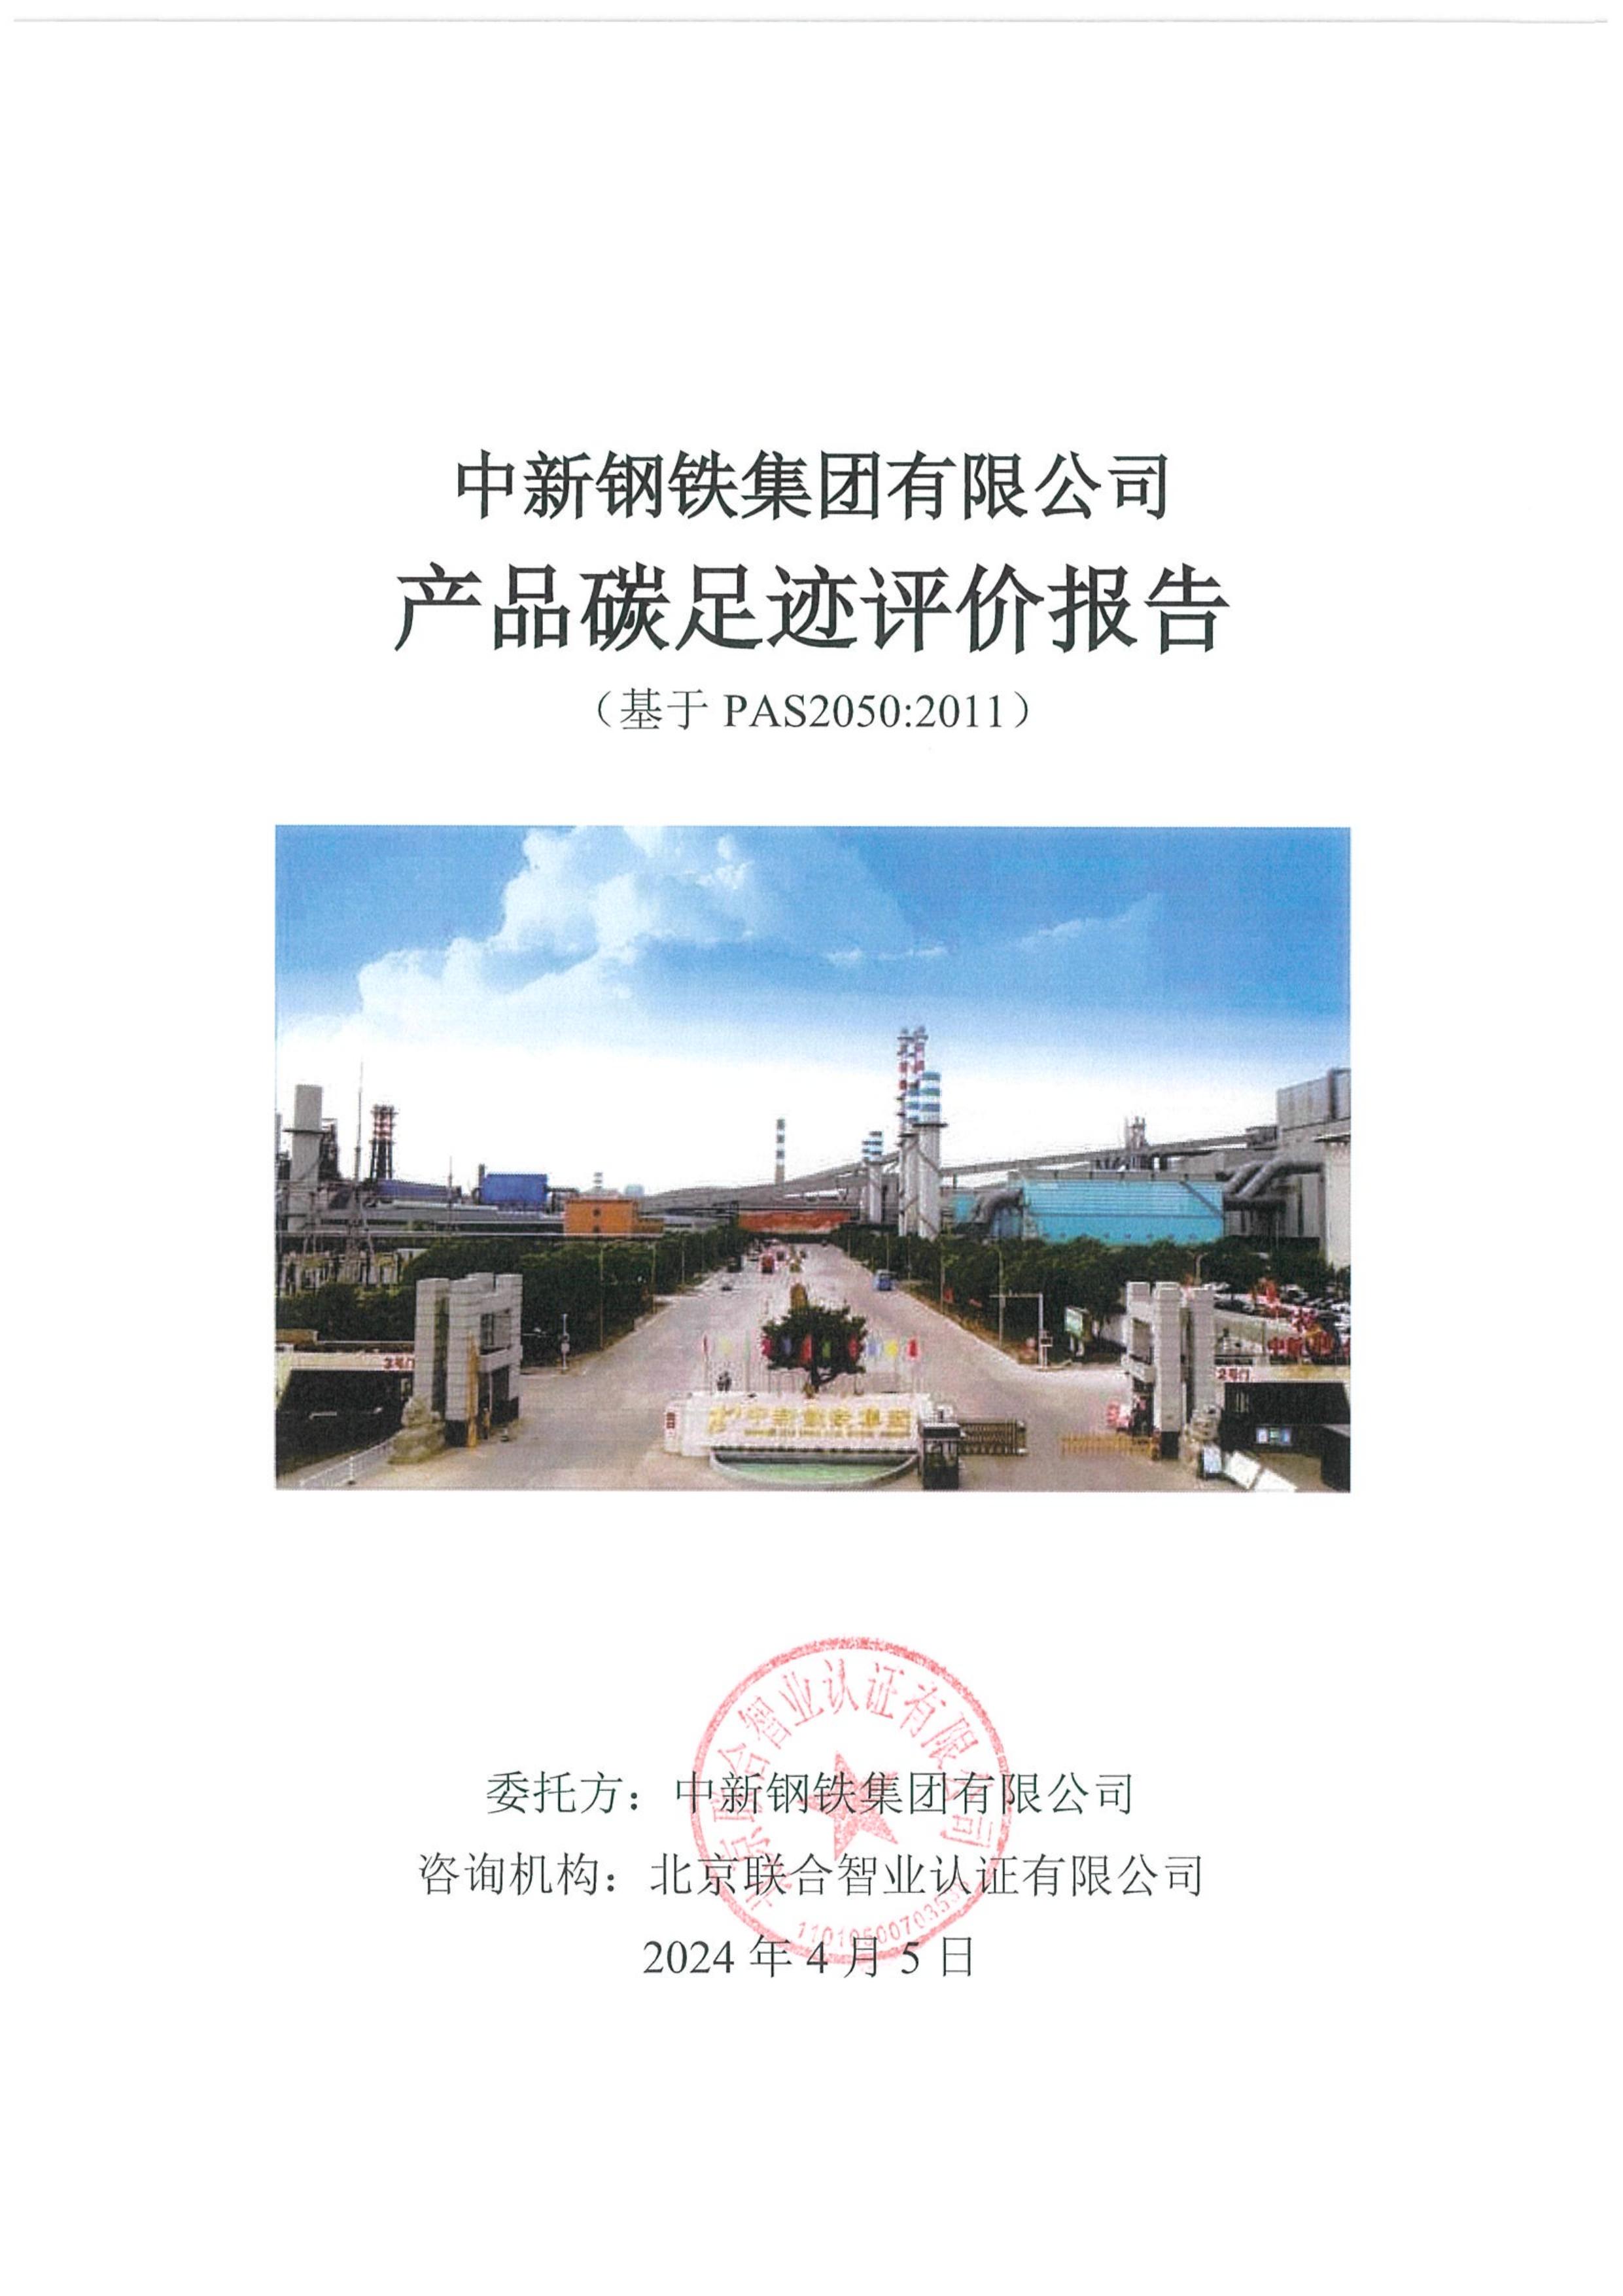 （正）中新钢铁集团有限公司_PAS2050产品碳足迹报告_20240424_v1(1)_00